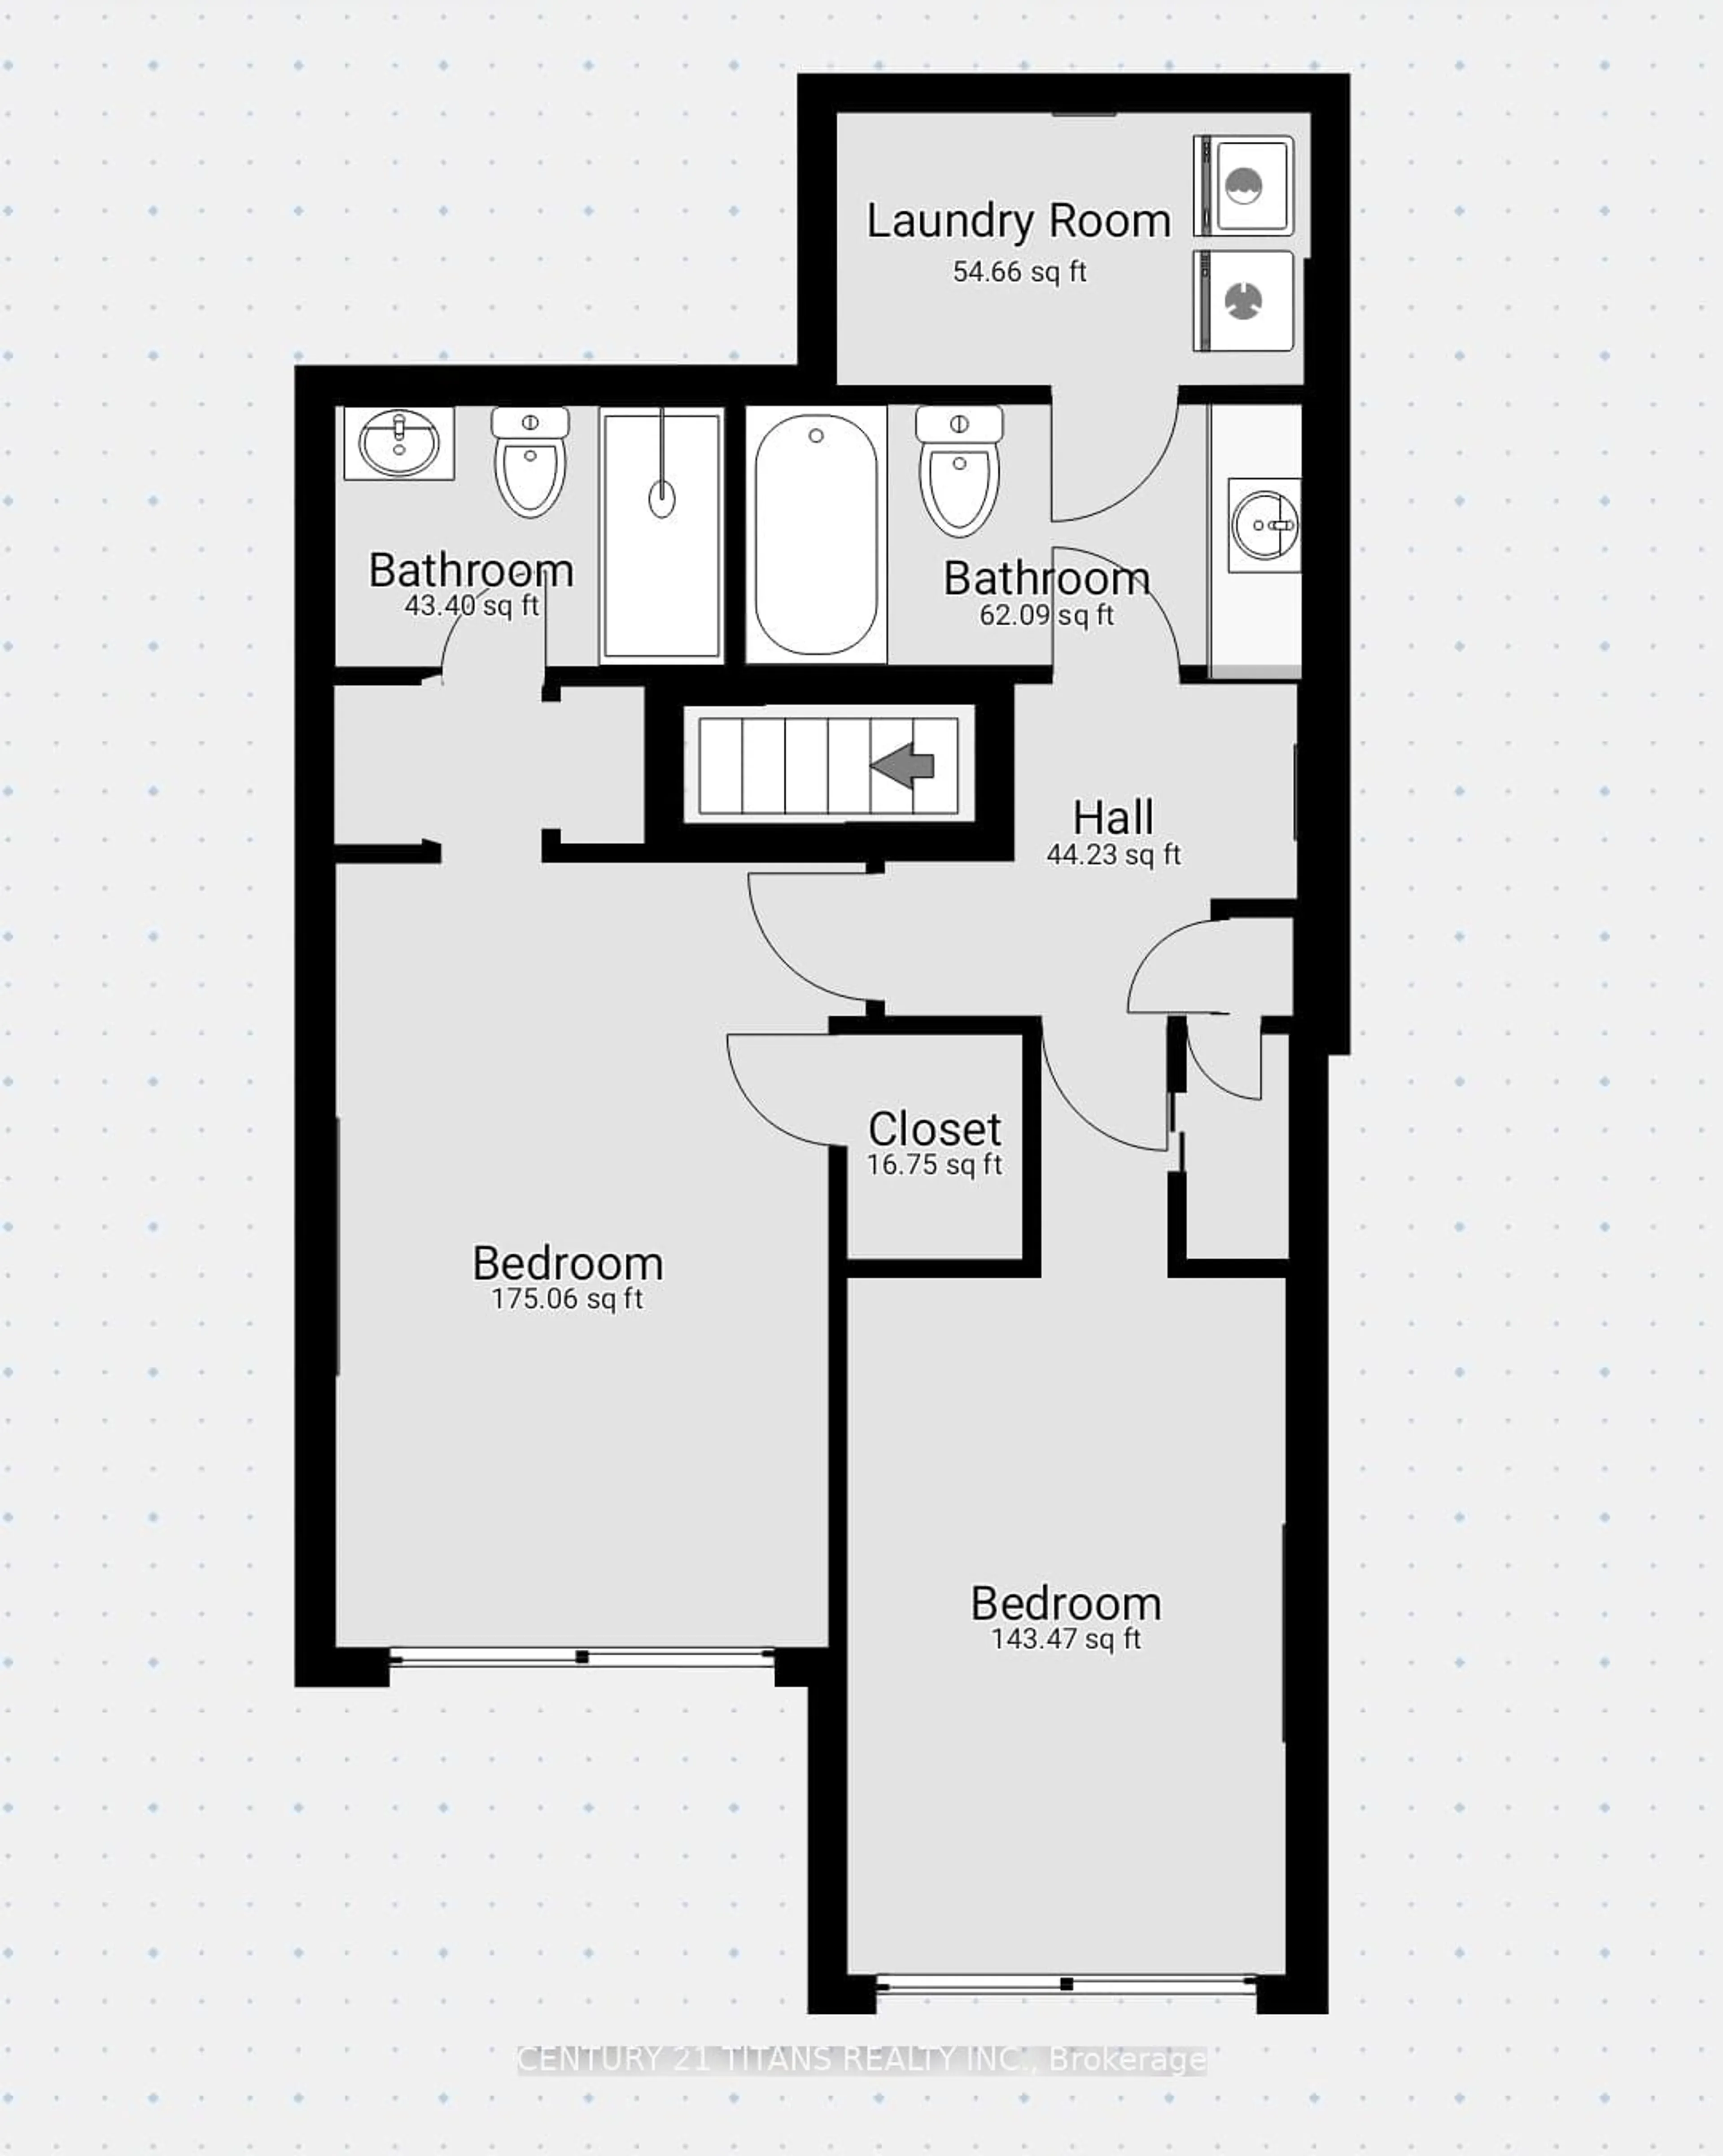 Floor plan for 100 Mornelle Crt #1076, Toronto Ontario M1E 4X2